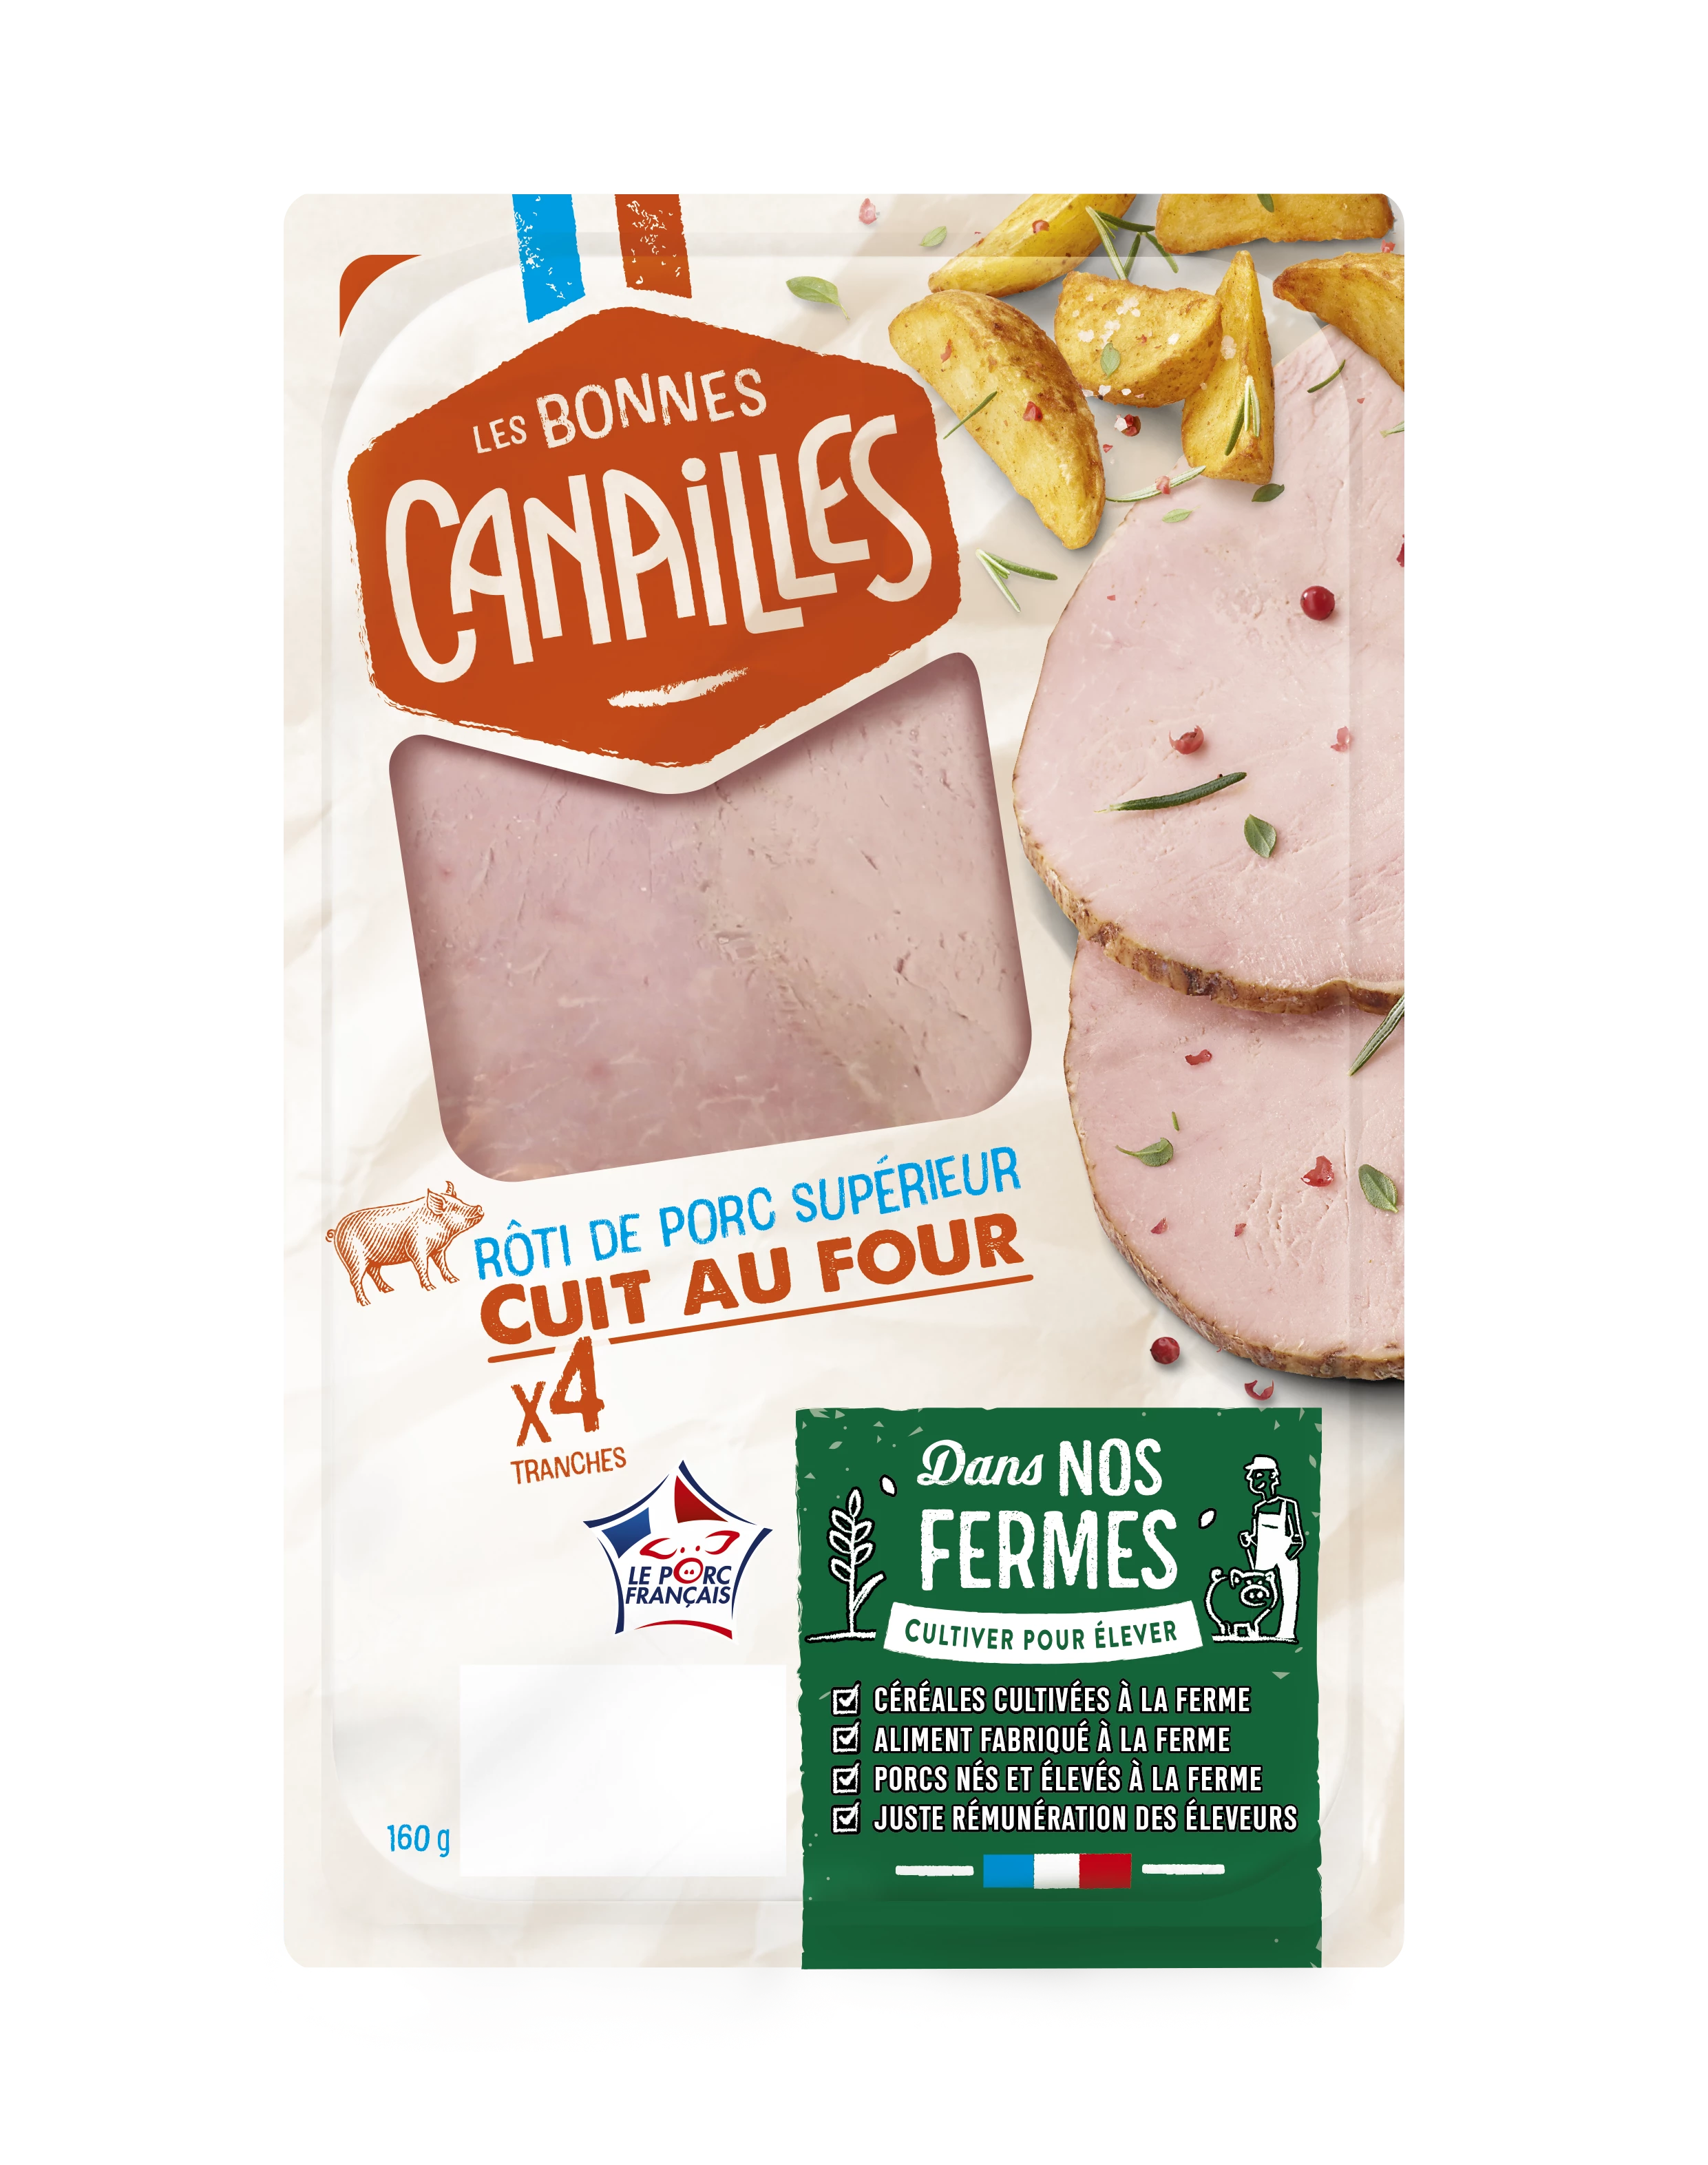 Jambon Rôti de Porc Superieur Cuit au Four, 160g - LES BONNES CANAILLES